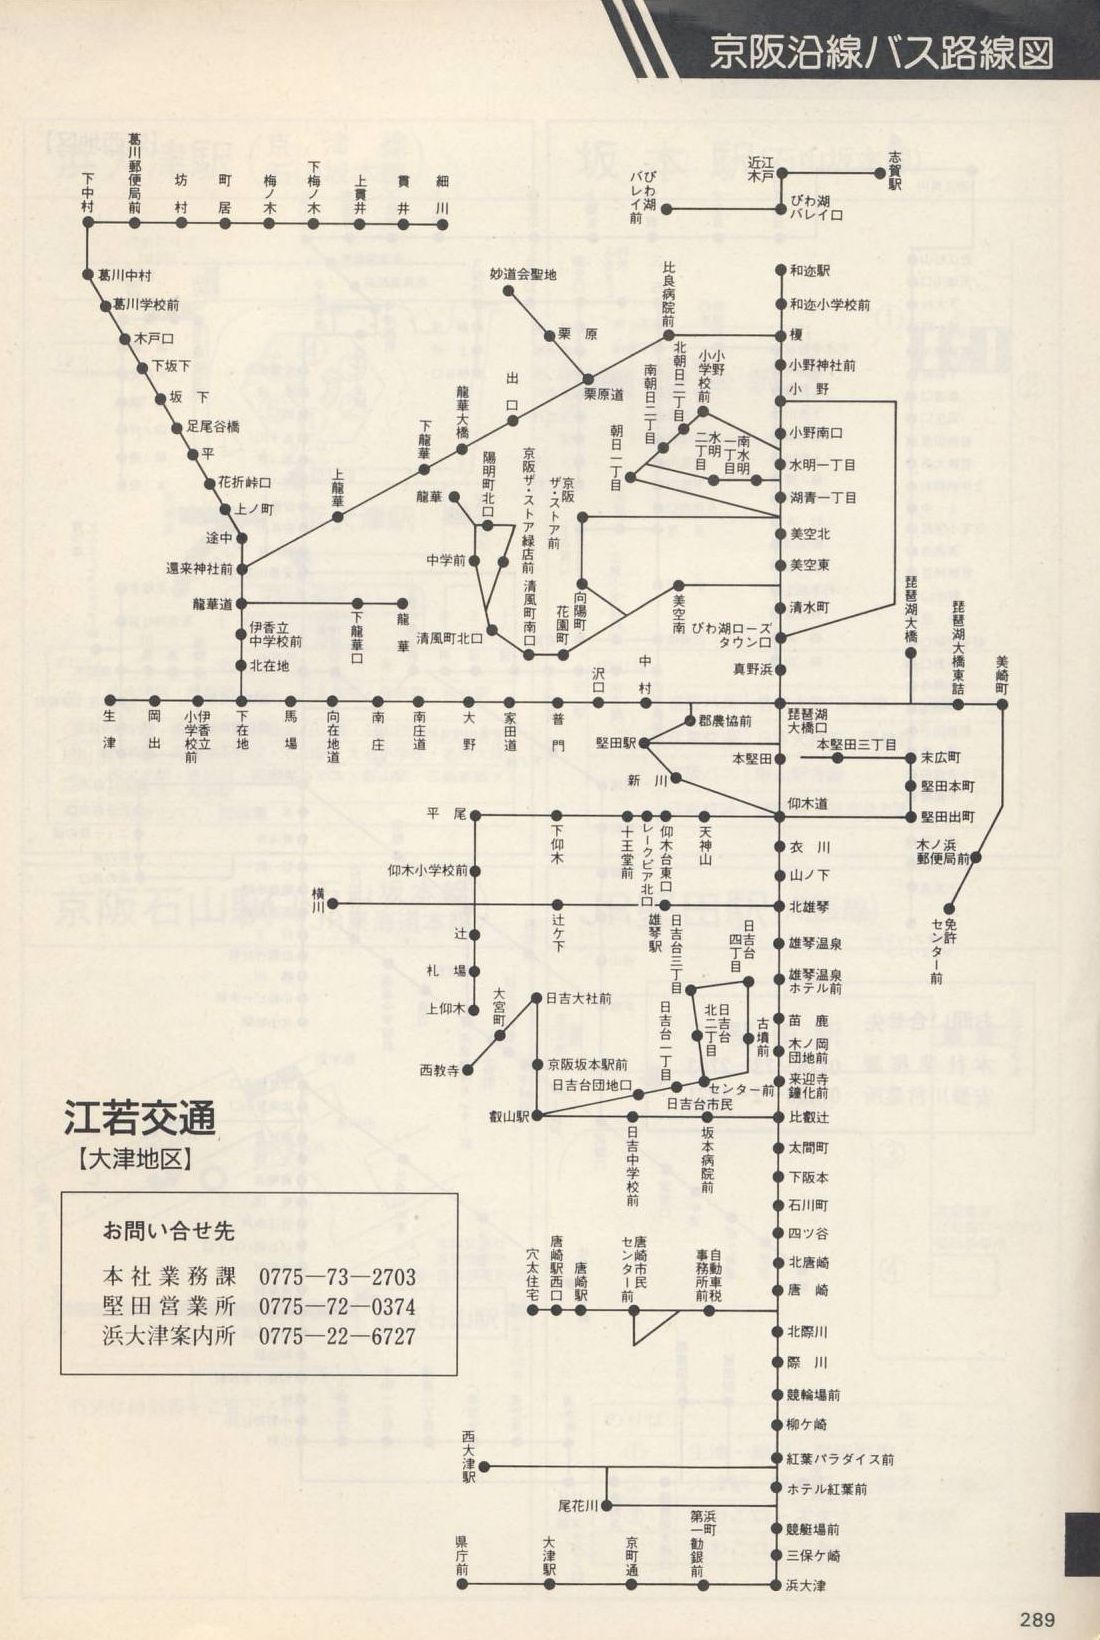 1987-06-01改正_京阪電気鉄道_冊子時刻表_289(江若交通路線図)